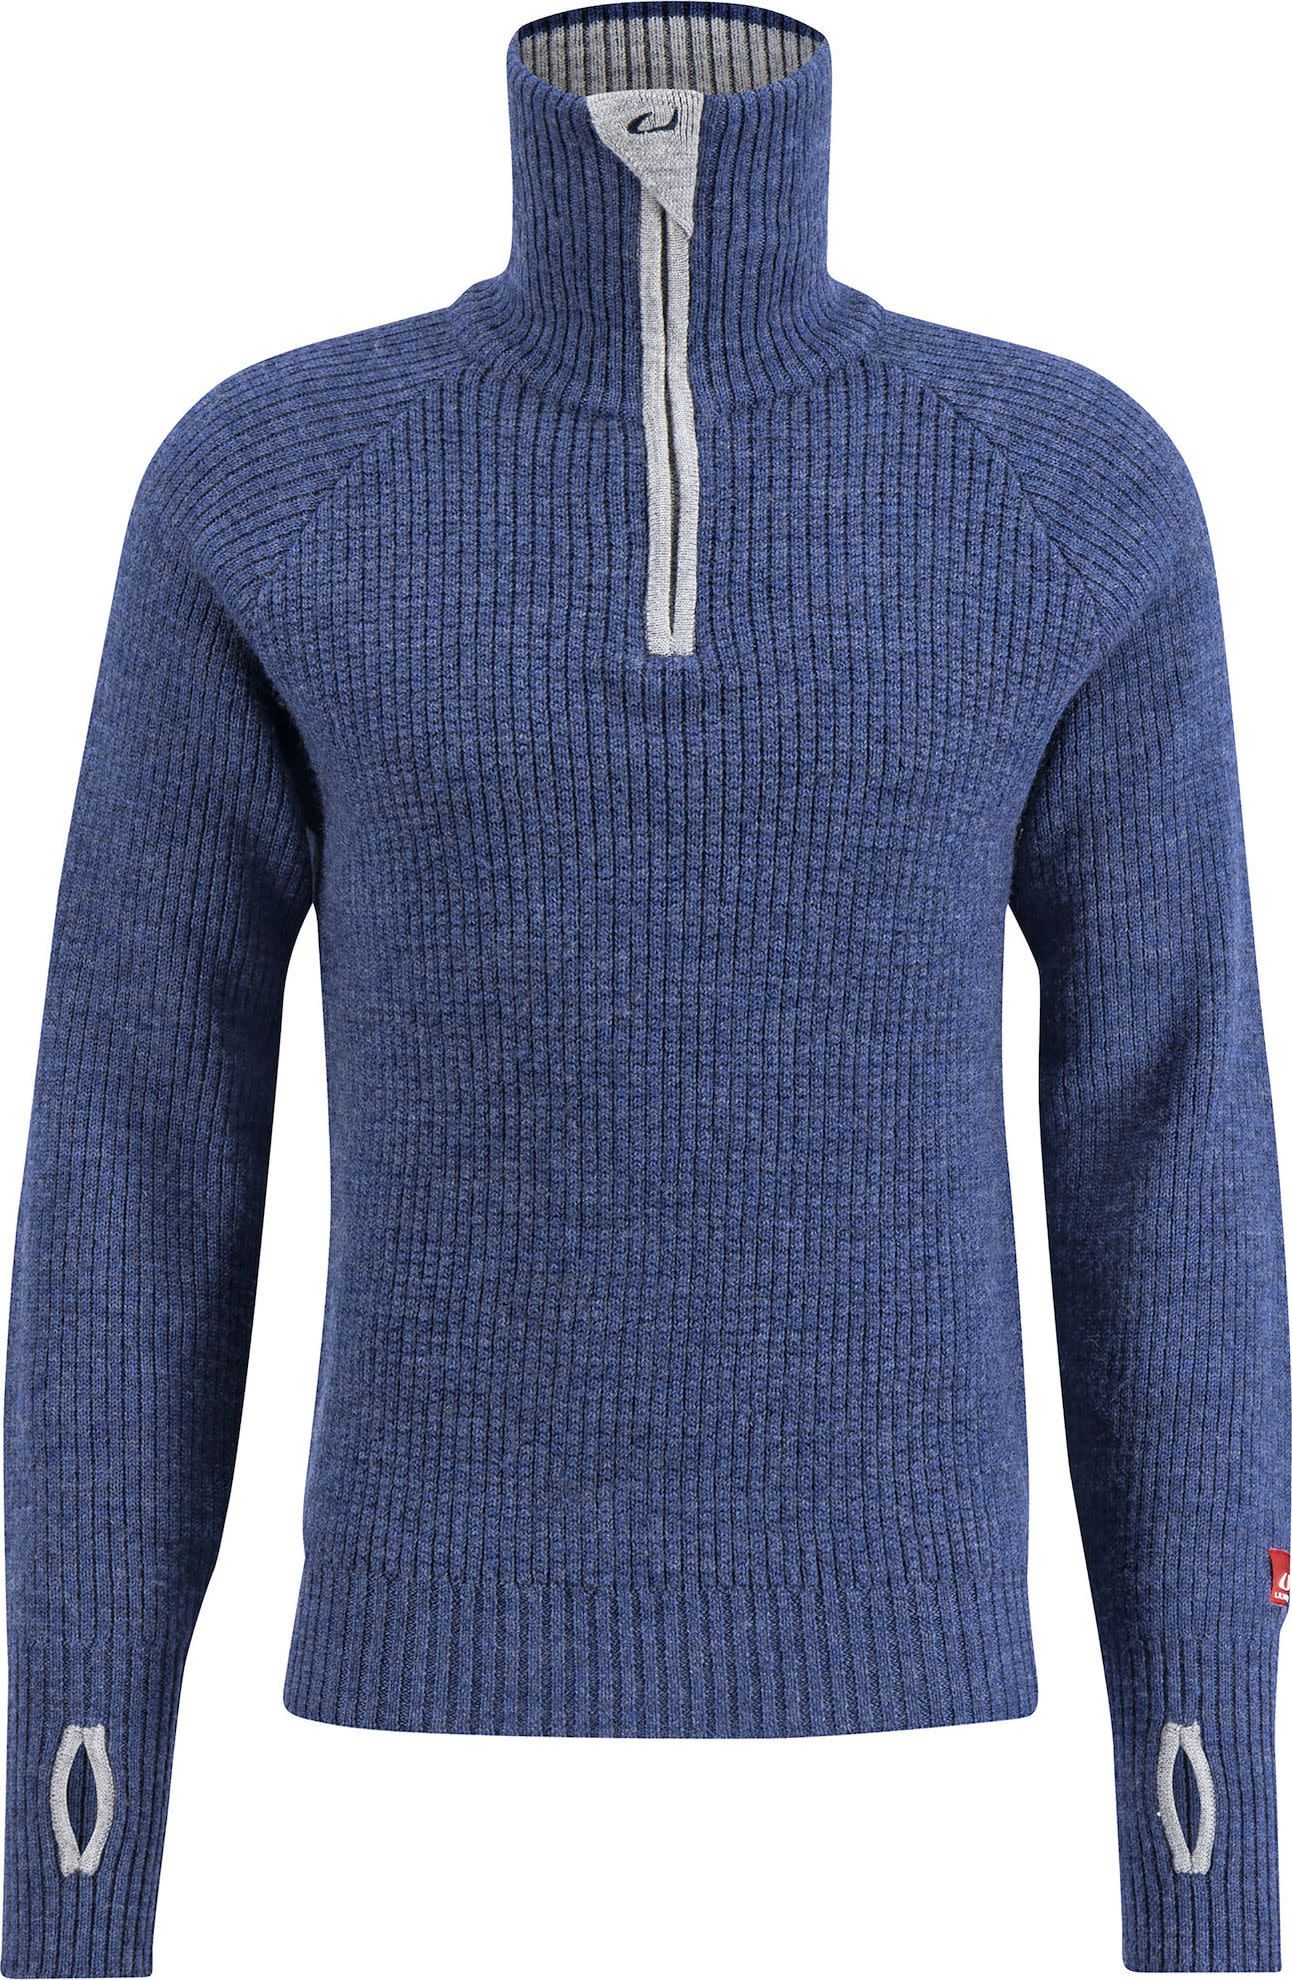 Ulvang Unisex Rav Sweater With Zip Navy Melange/Grey Melange/New Navy